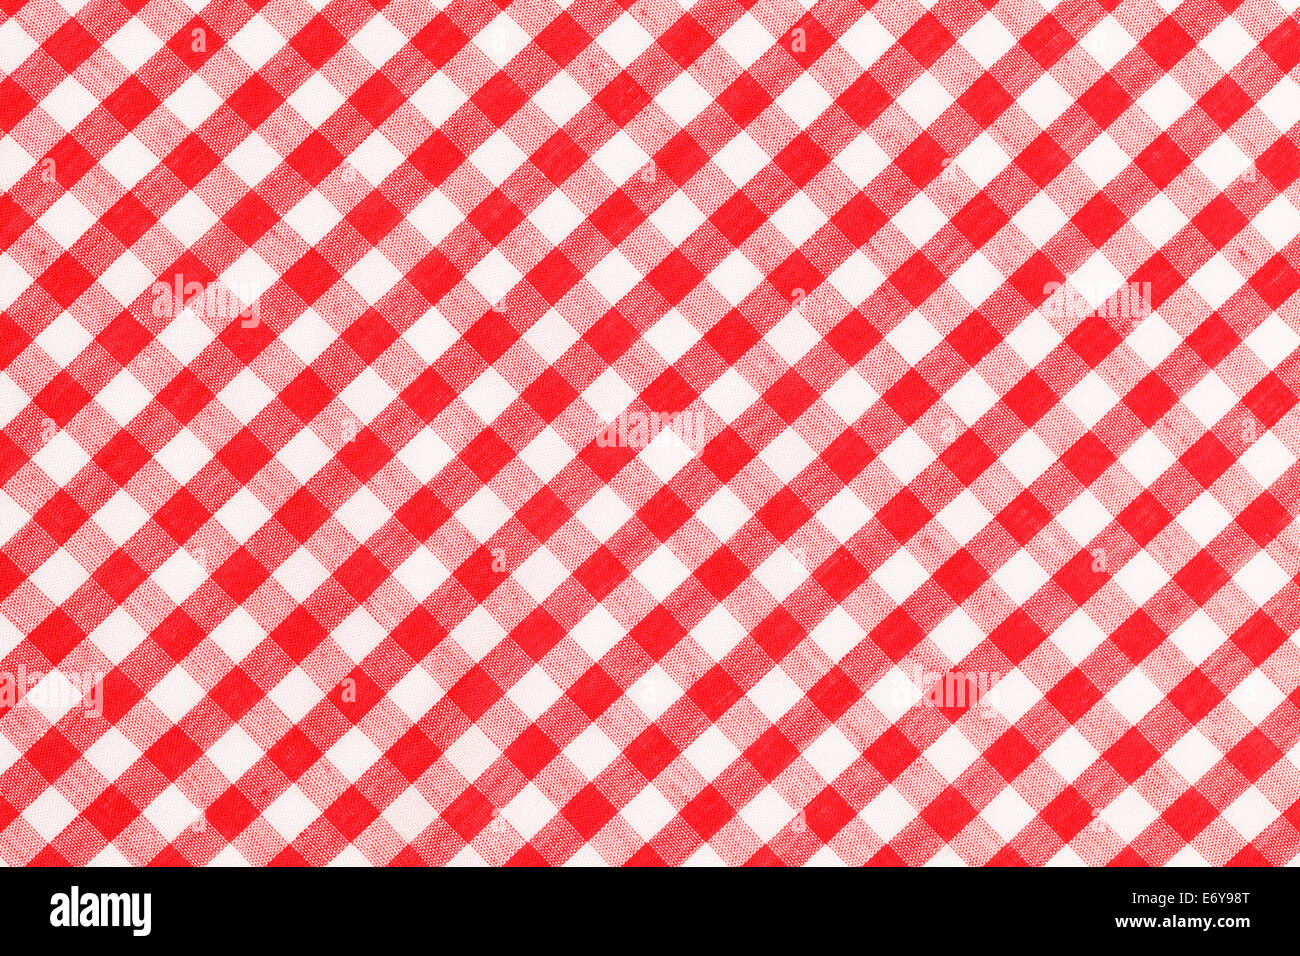 Rot-weiß karierte Tuch Tabellenhintergrund Stockfotografie - Alamy